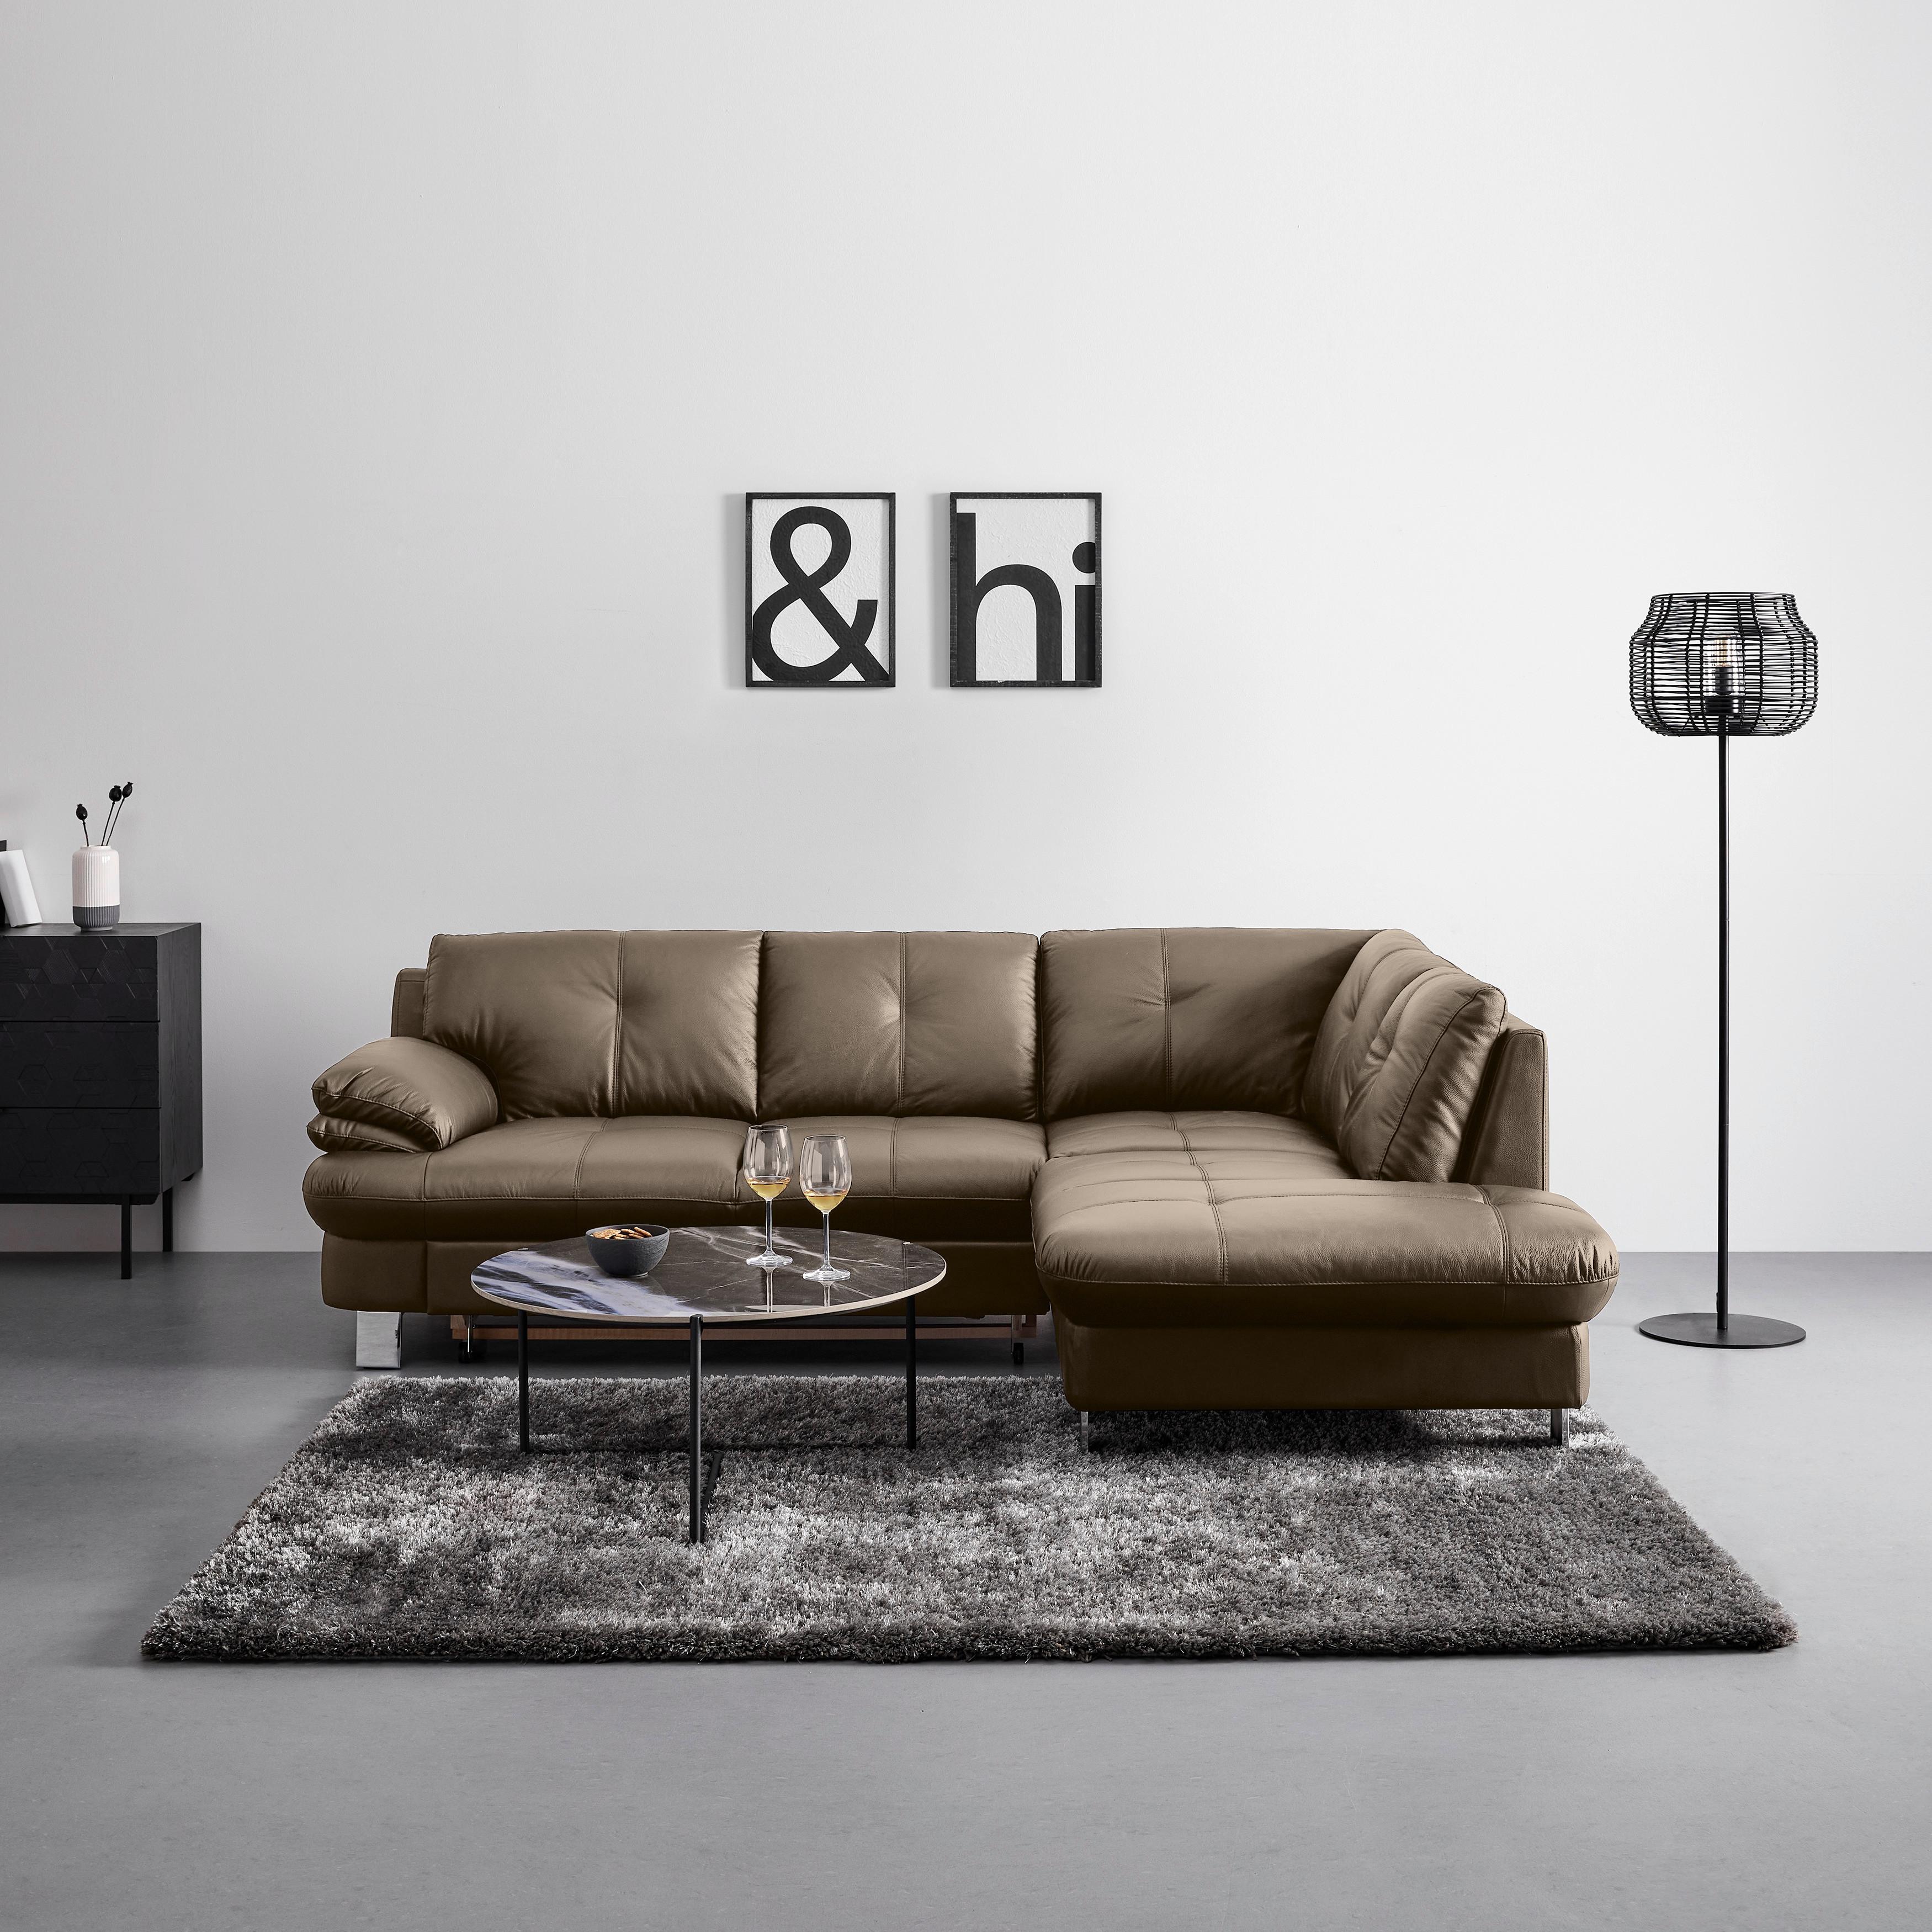 Sedežna Garnitura Bernadette Ii - krom/sivorjava, Moderno, kovina/tekstil (247/82/185cm) - Bessagi Home